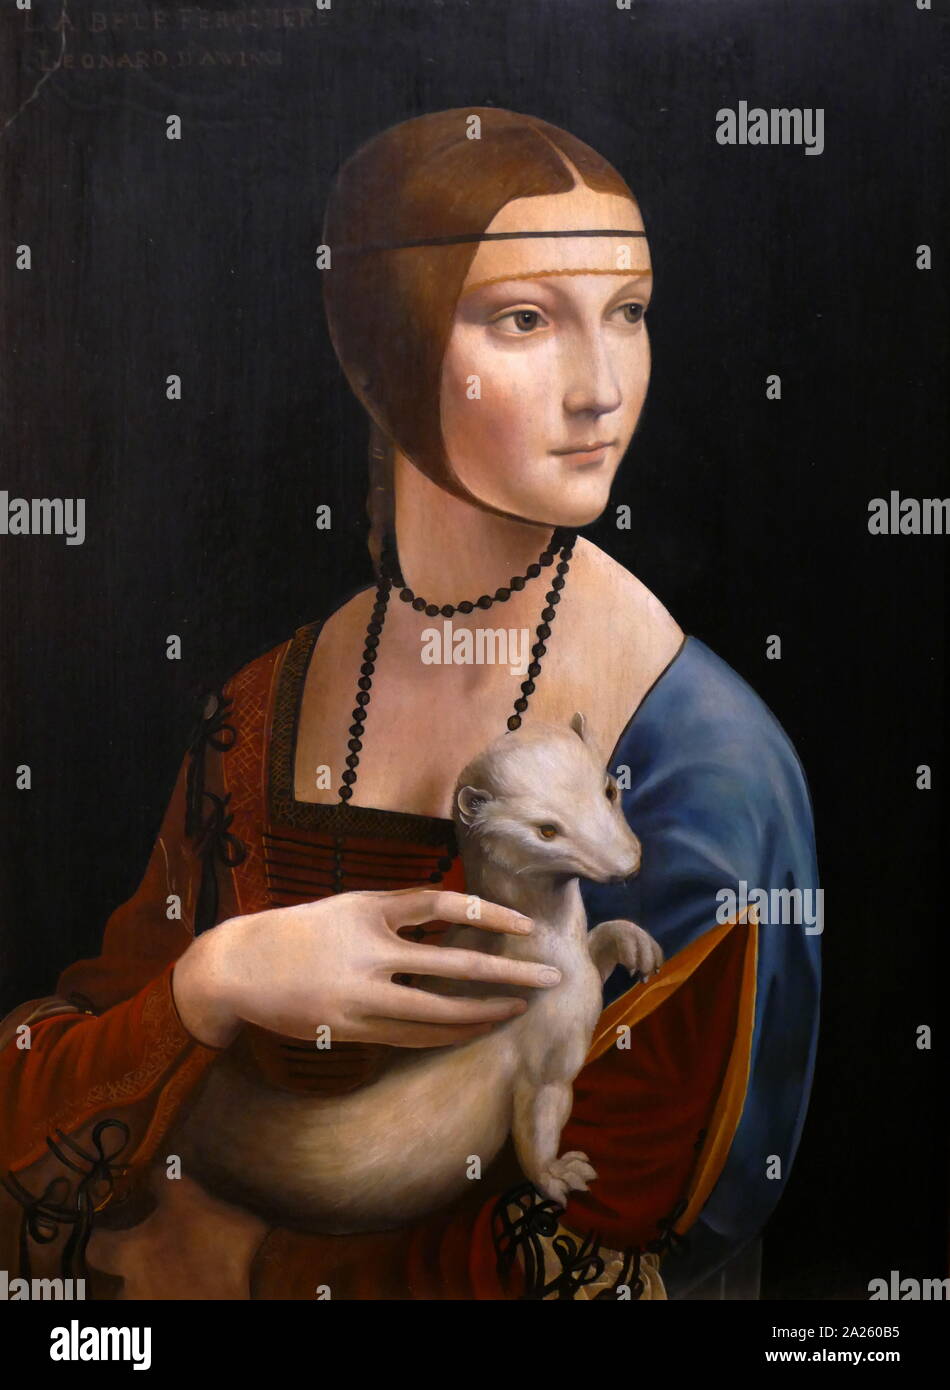 Dama con armiño, una pintura del artista italiano Leonardo da Vinci, circa 1489-1490. El tema del retrato es Cecilia Gallerani, pintada en un momento en que ella era la amante de Ludovico Sforza, duque de Milán, y Leonardo fue en el Duke's service. Foto de stock